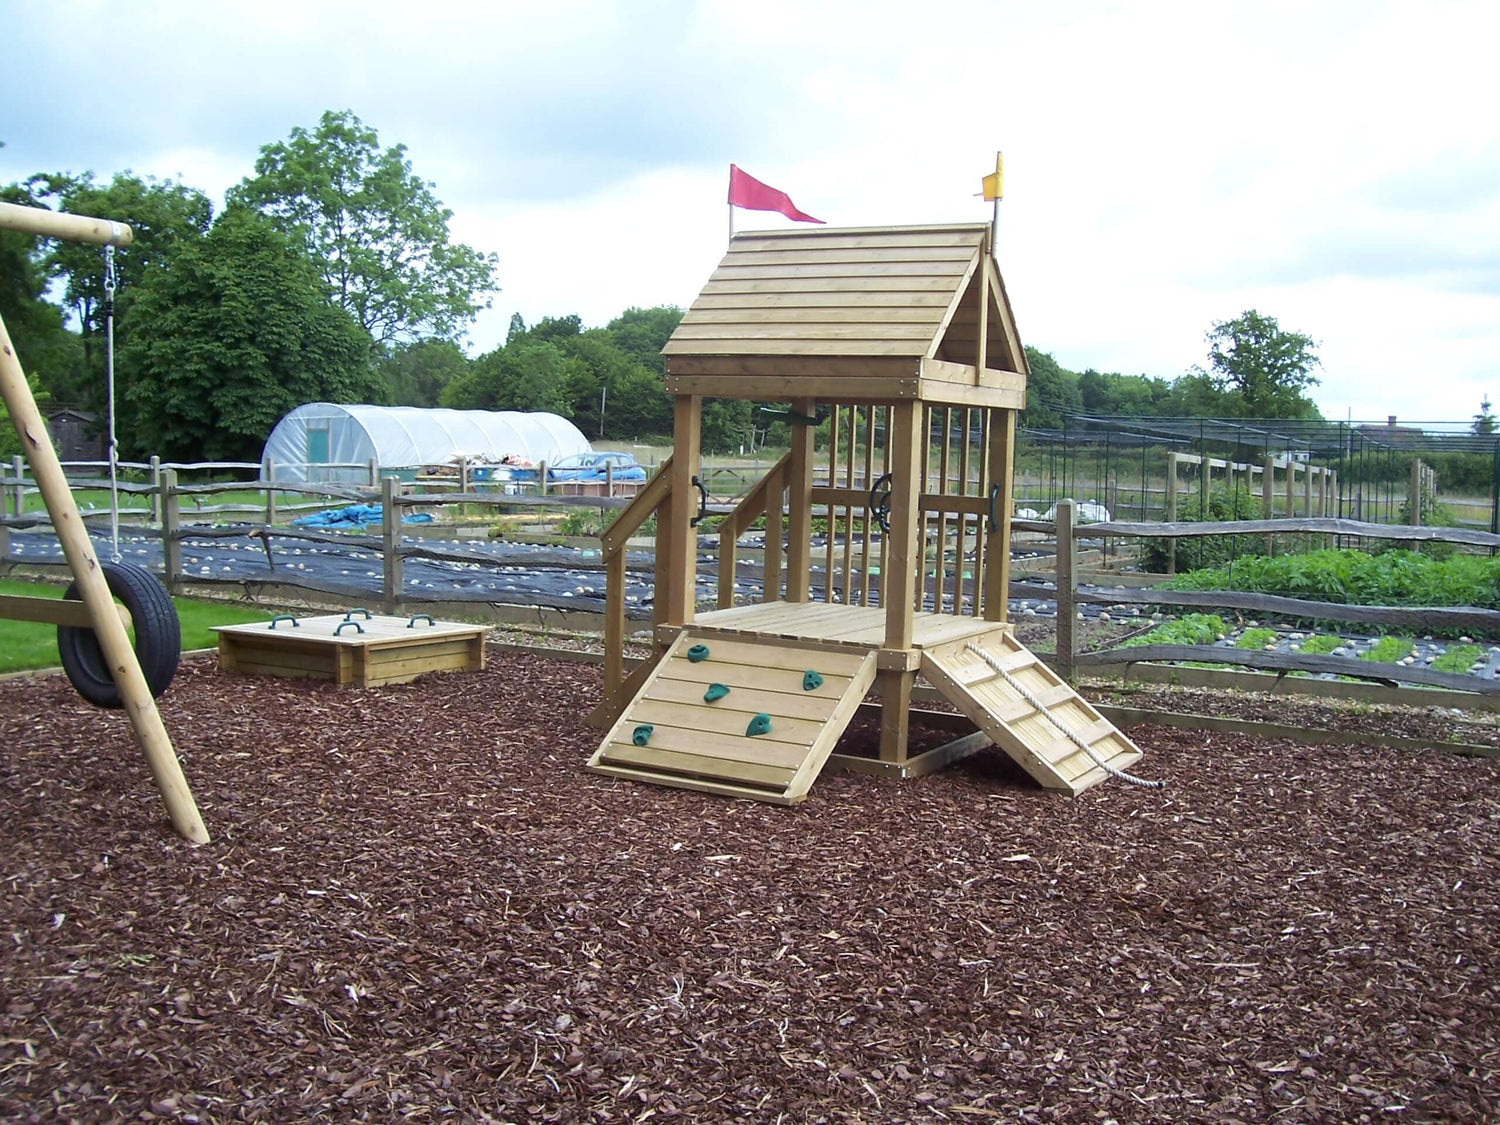 Children's Play Areas - Gardenscapedirect